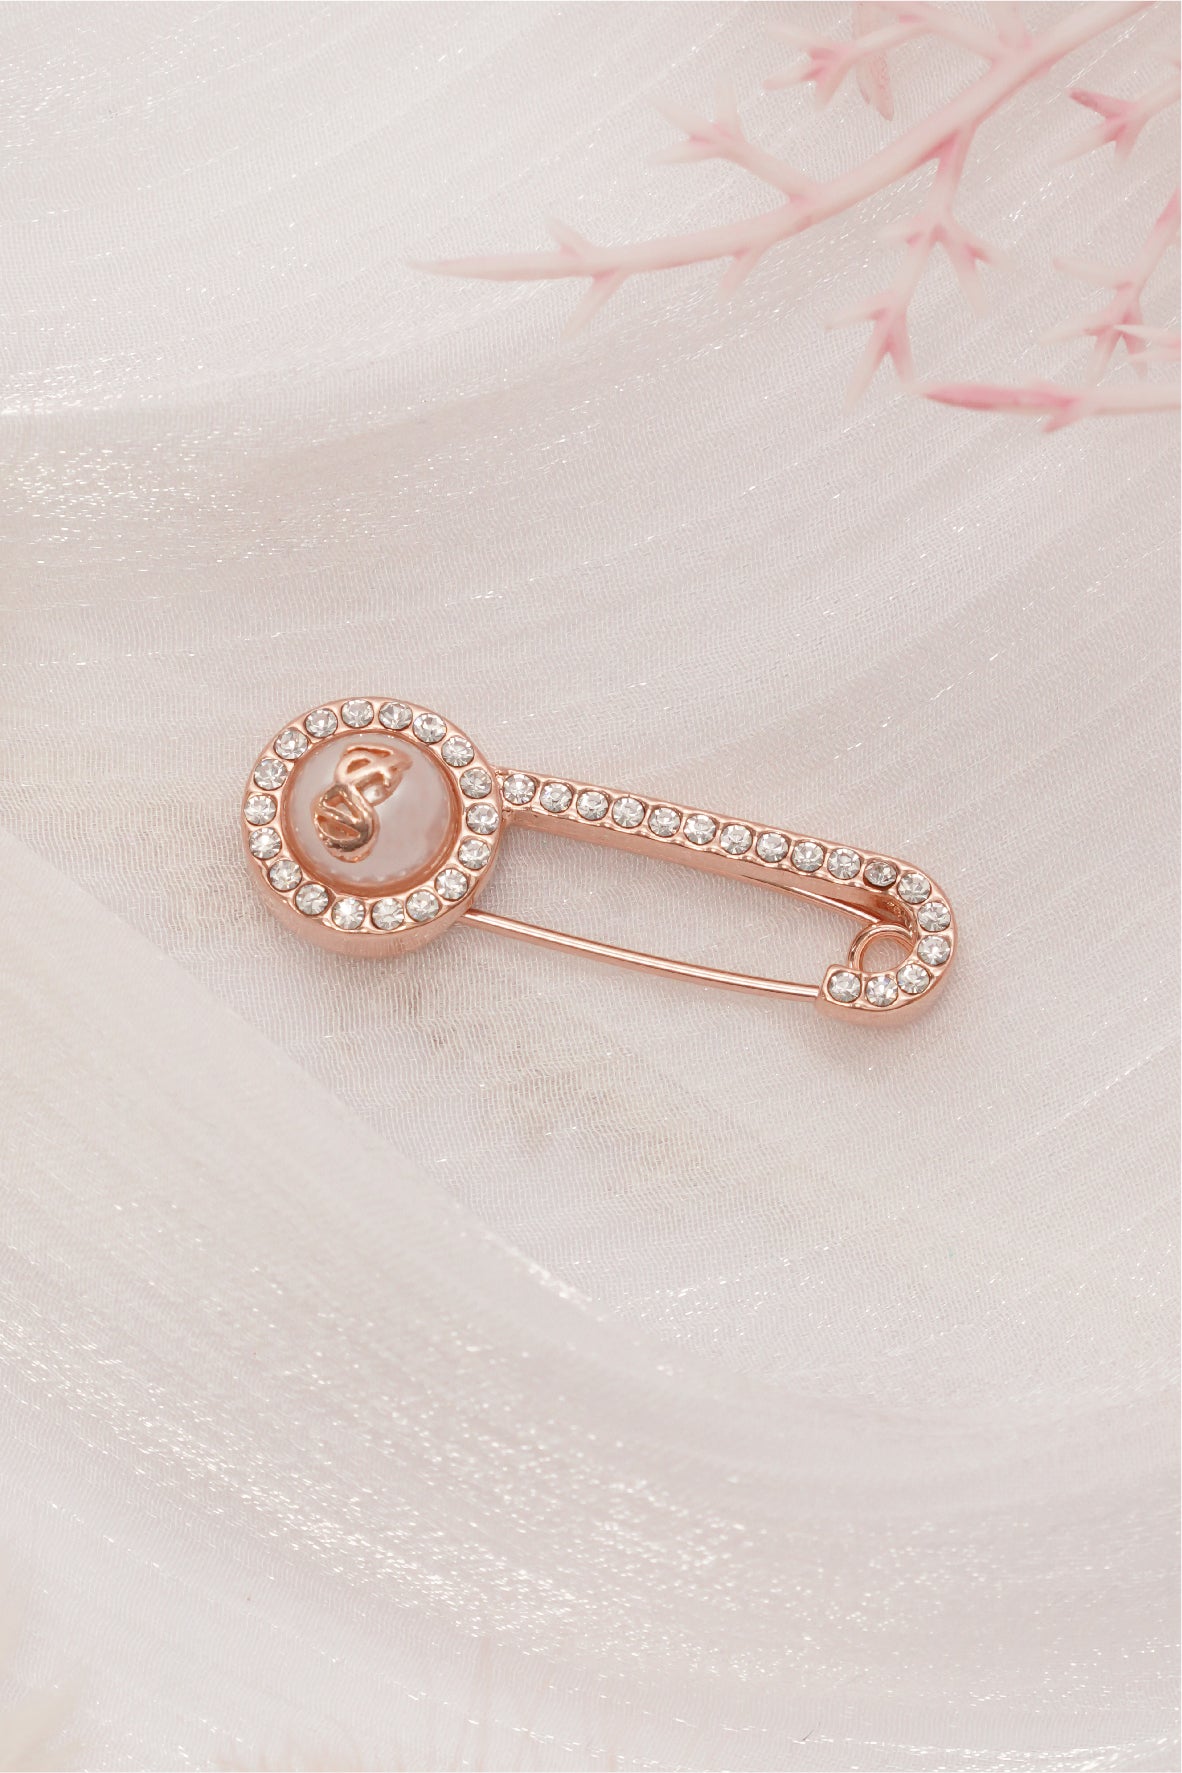 Safety Hijab Pin Set - Rose Gold